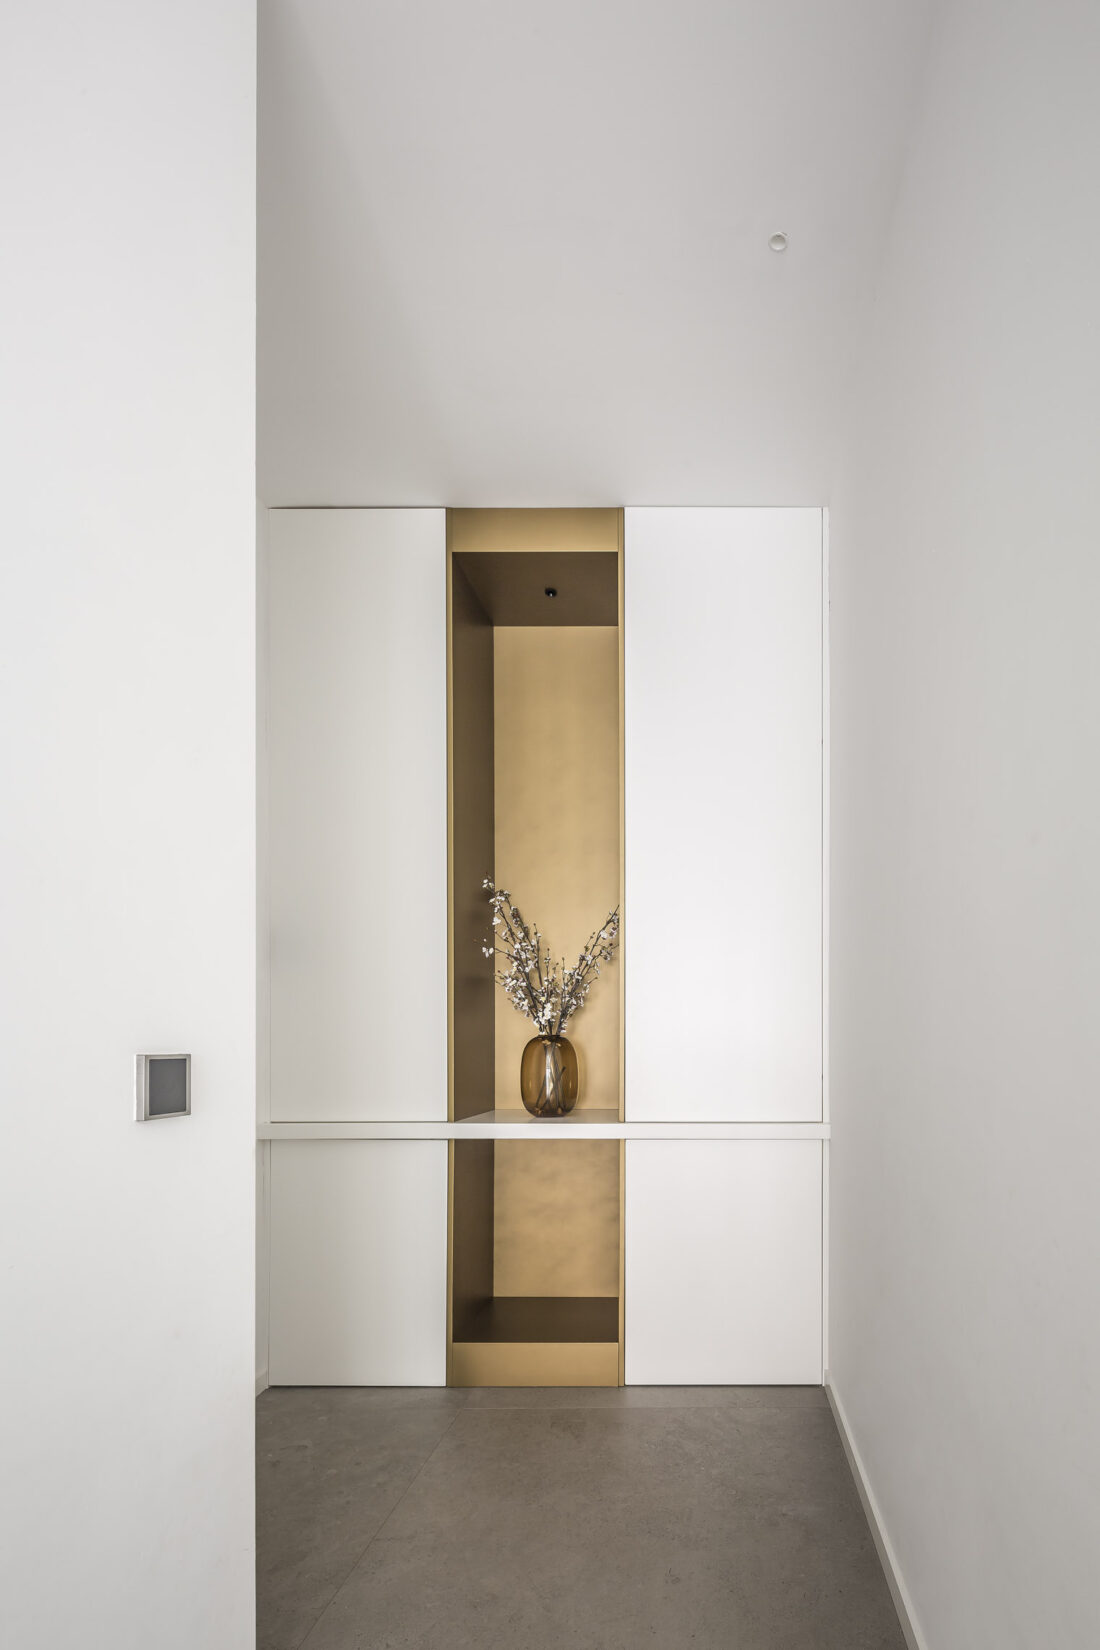 Dobleese arquitectura interiorismo premium vivienda minimalista detalle dorado